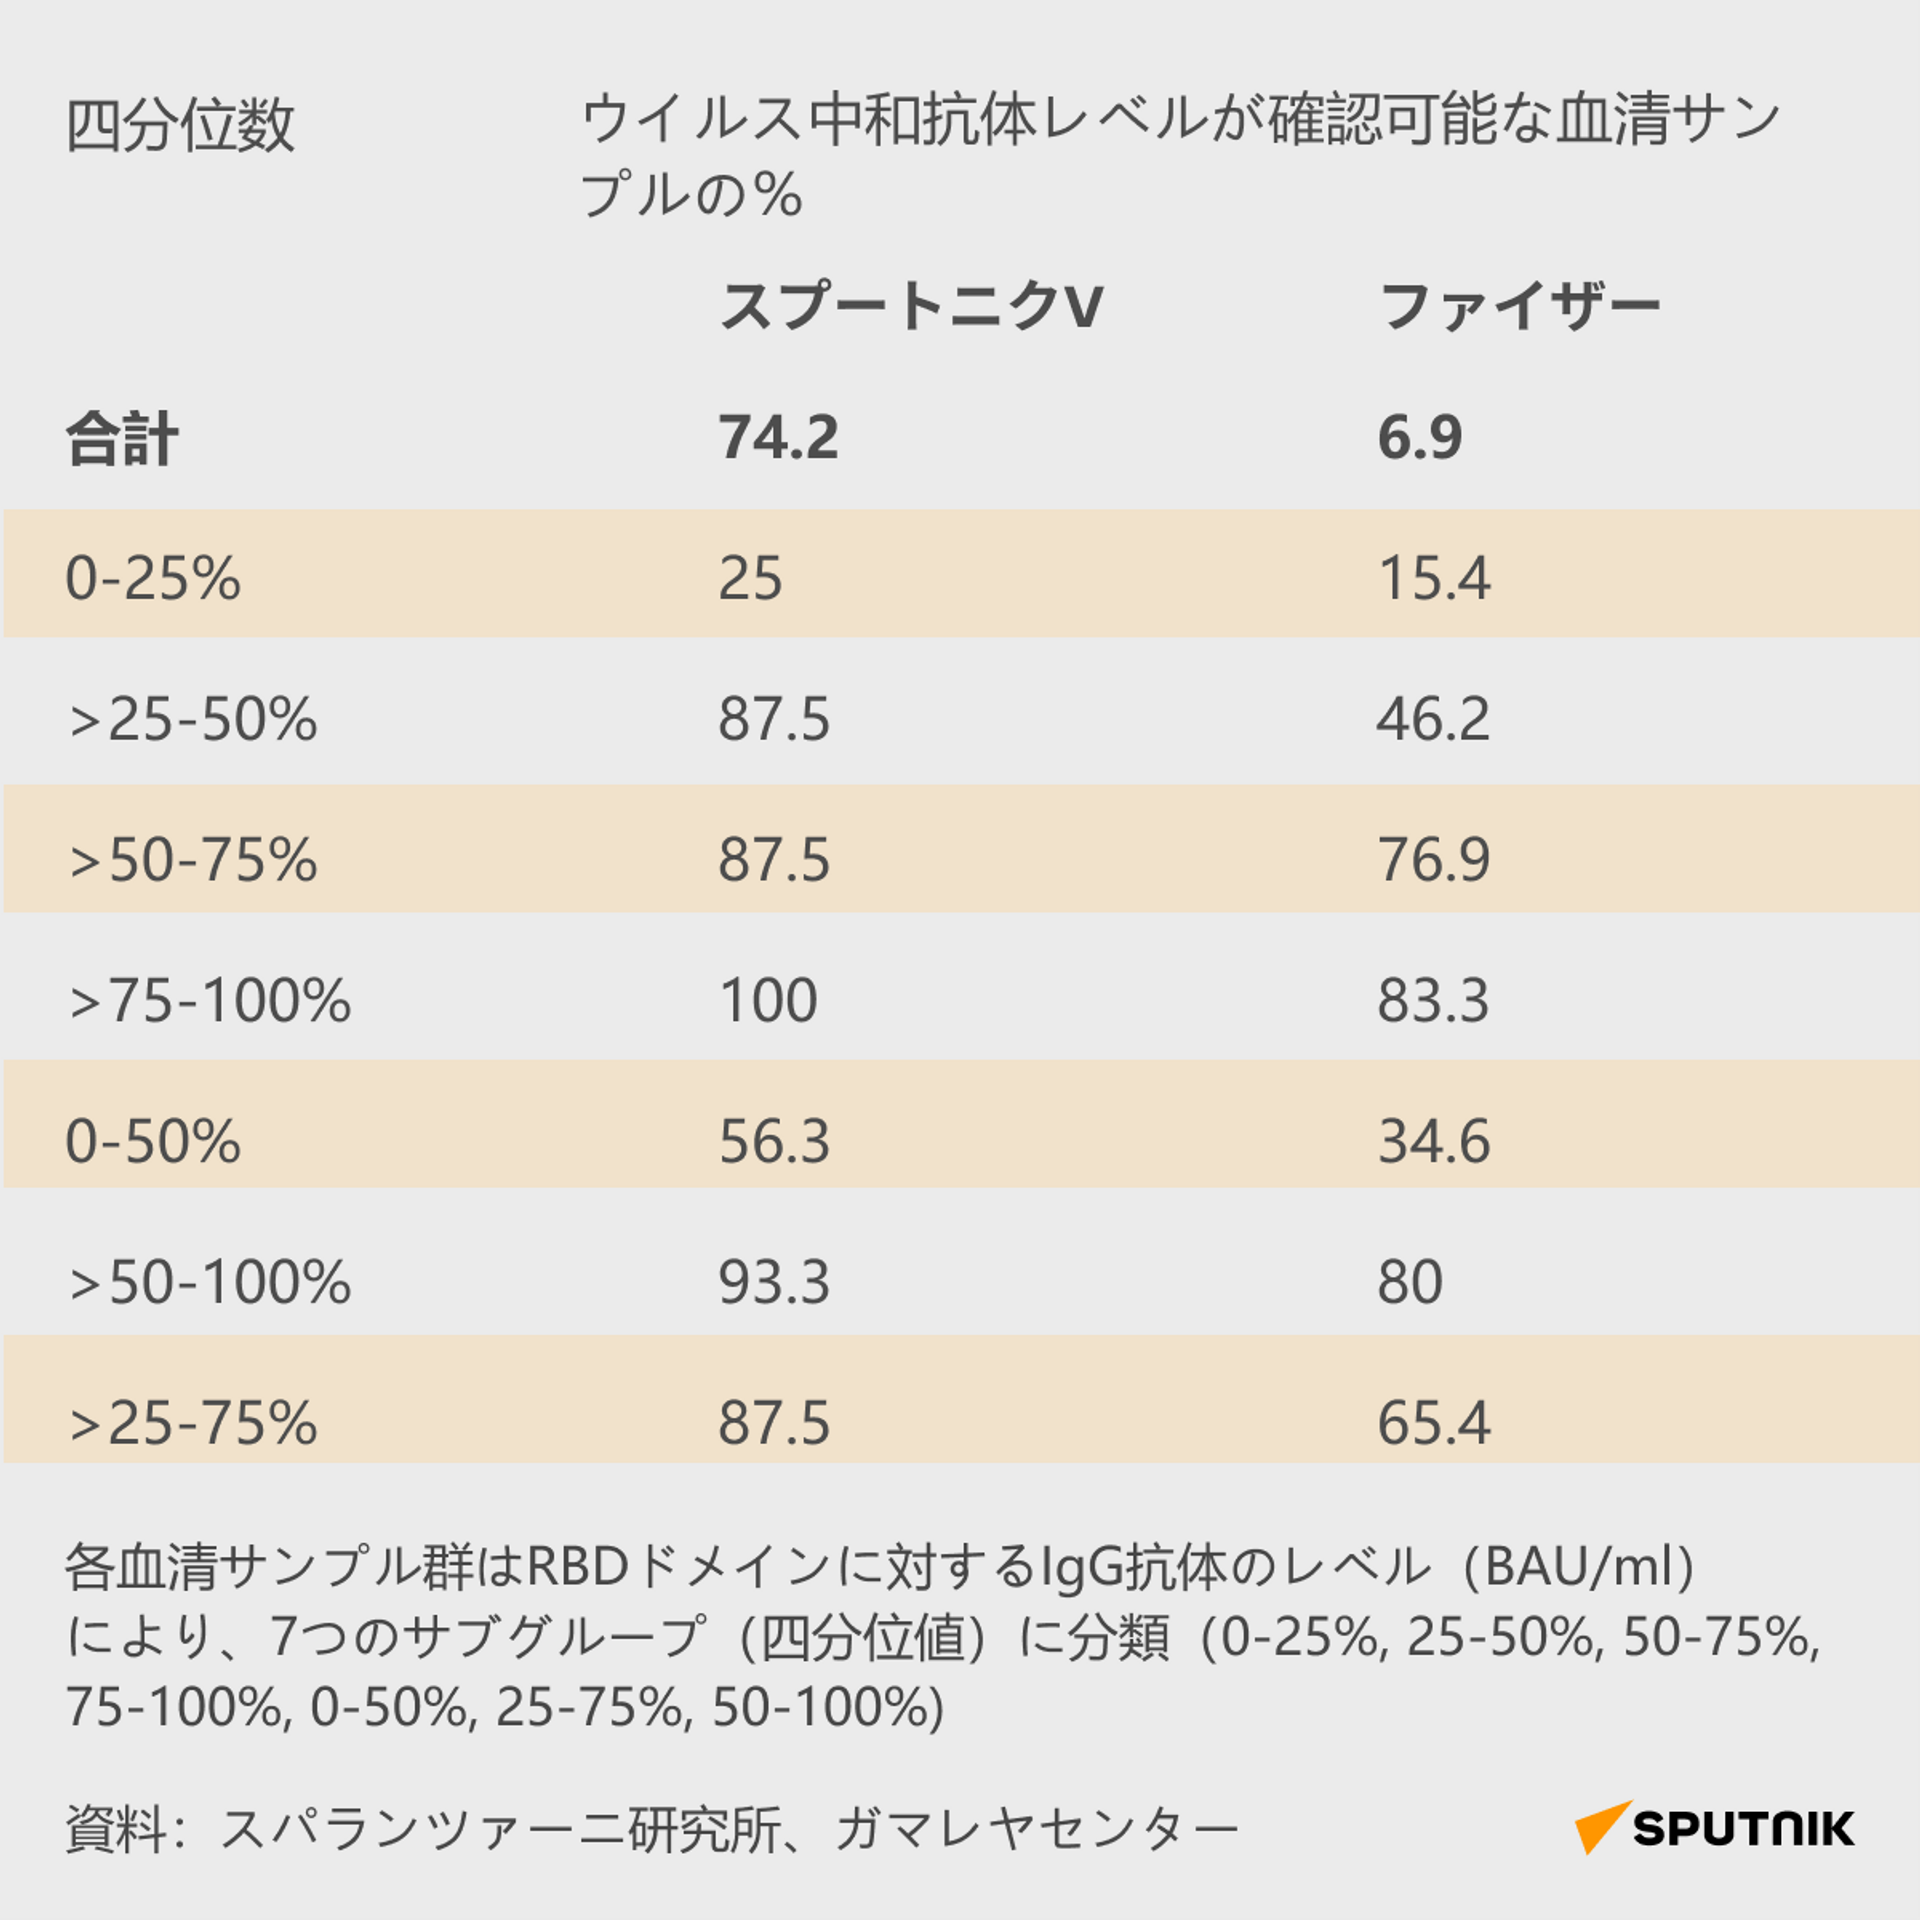 オミクロン株に対する中和抗体価 - Sputnik 日本, 1920, 19.01.2022